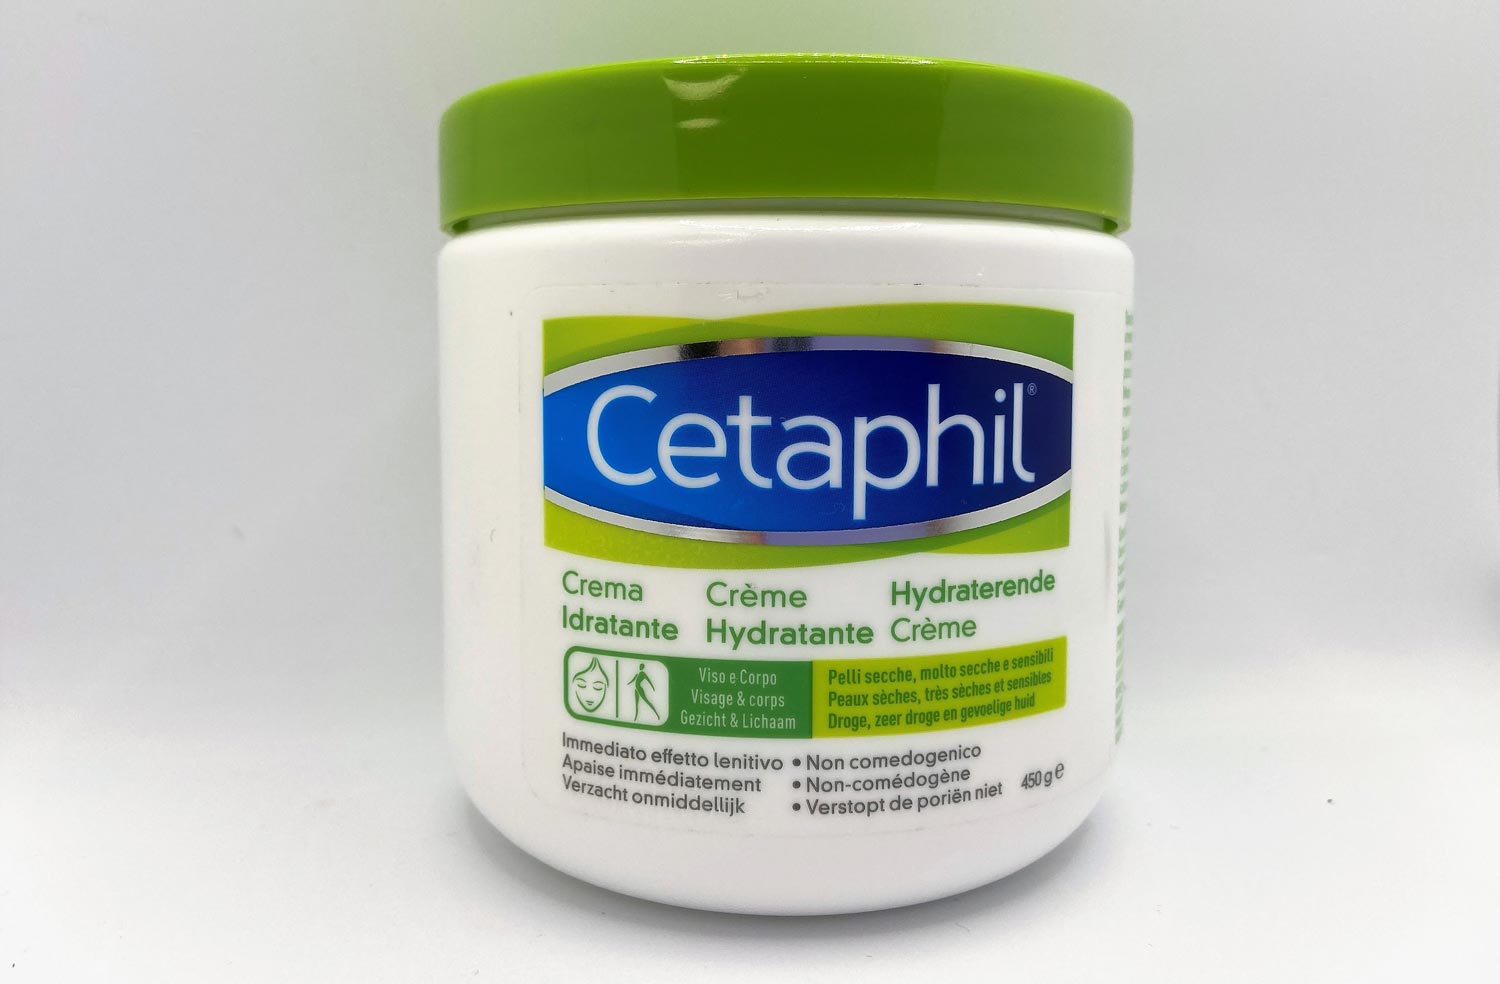 Cetaphil Crema Idratante